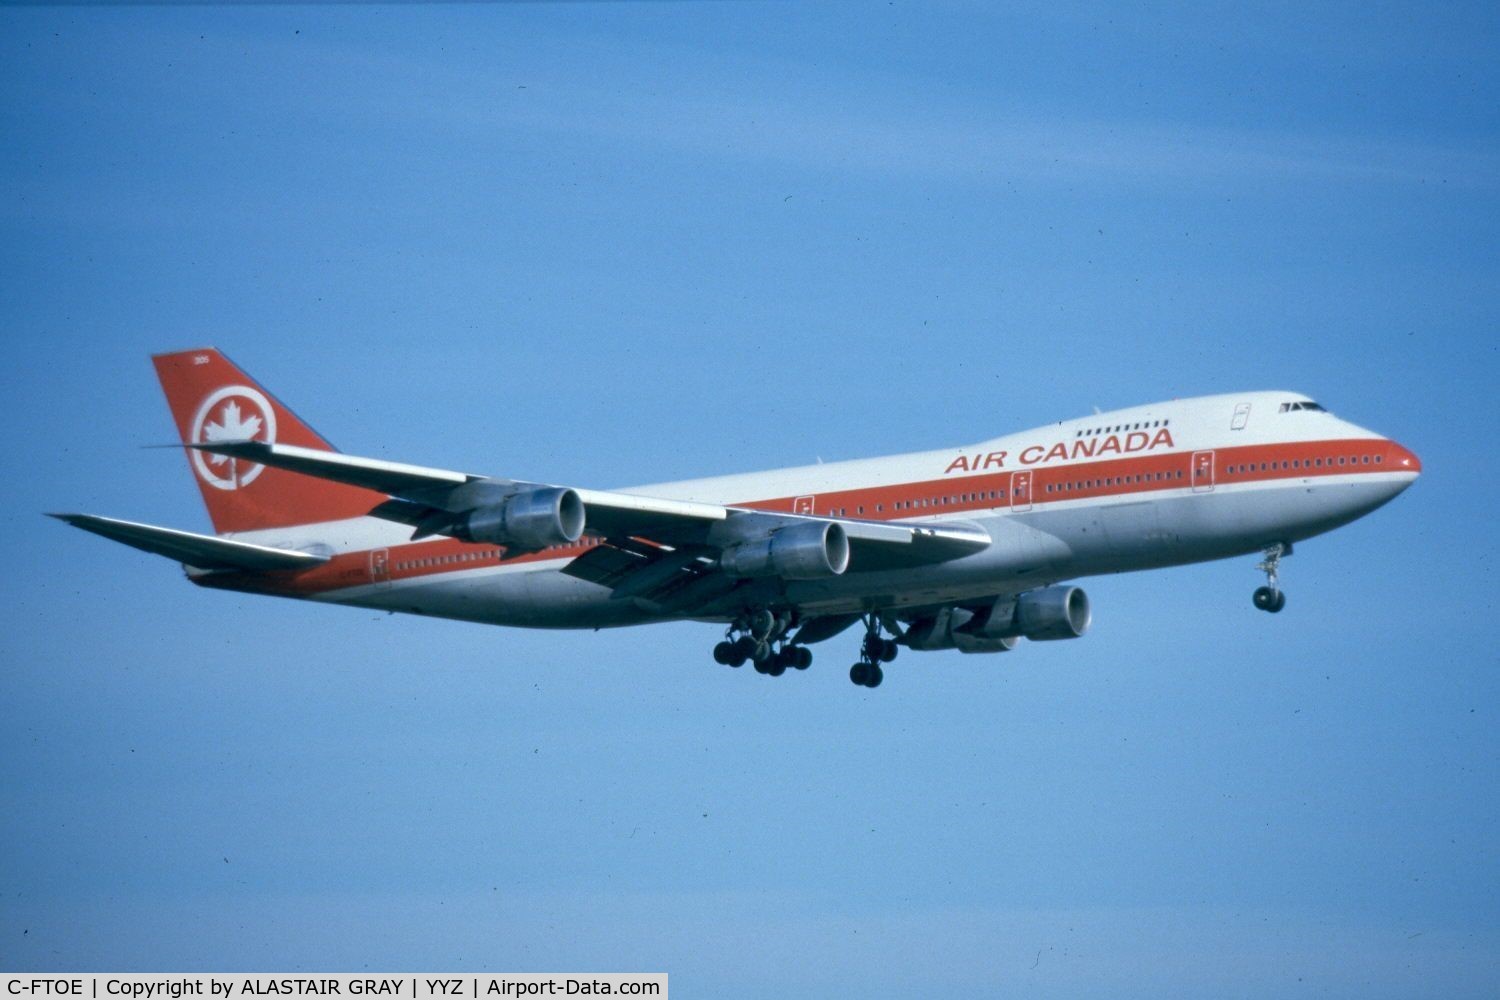 C-FTOE, 1974 Boeing 747-133 C/N 20881, landing on runway 15L at YYZ